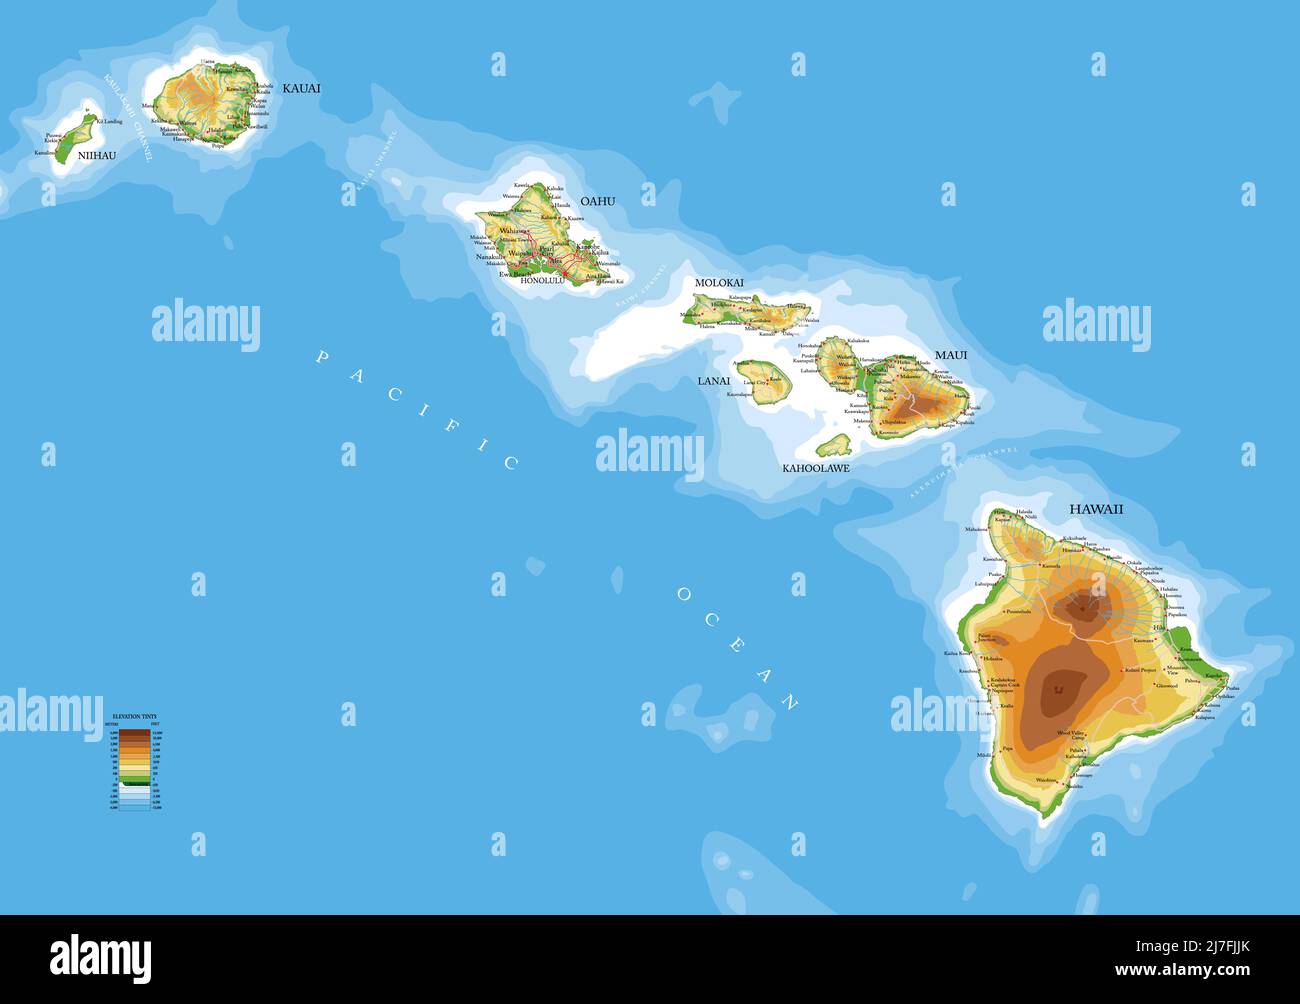 Sehr detaillierte physische Karte der Hawaii-Inseln, im Vektorformat, mit allen Reliefformen, Straßen, Regionen und großen Städten. Stock Vektor